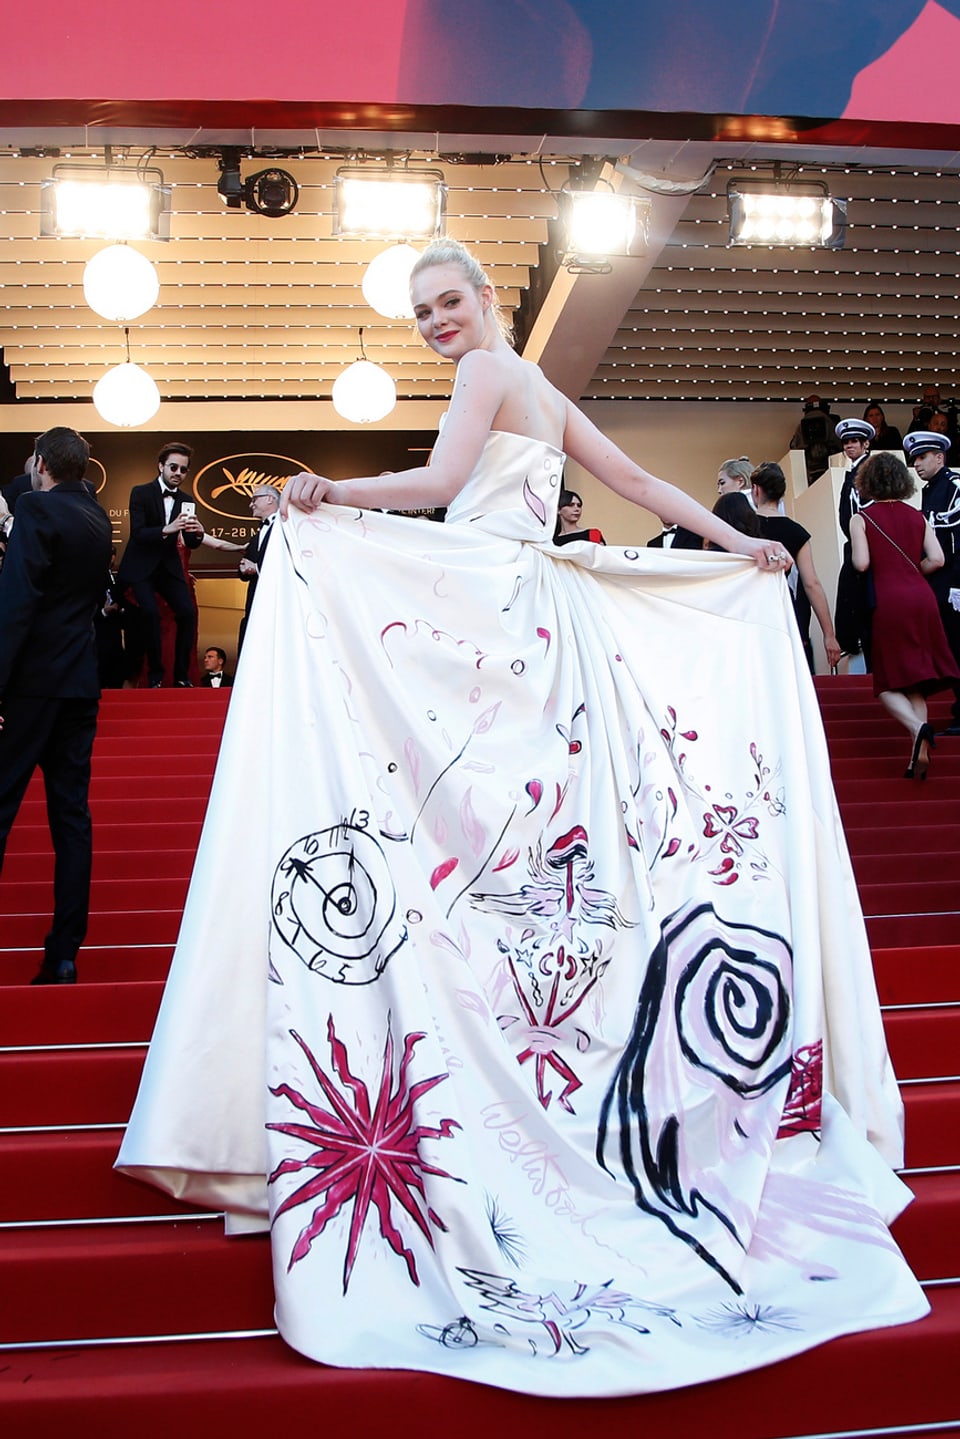 Schauspielerin Elle Fanning  in einen grossen weissen Kleid mit Zeichnungen